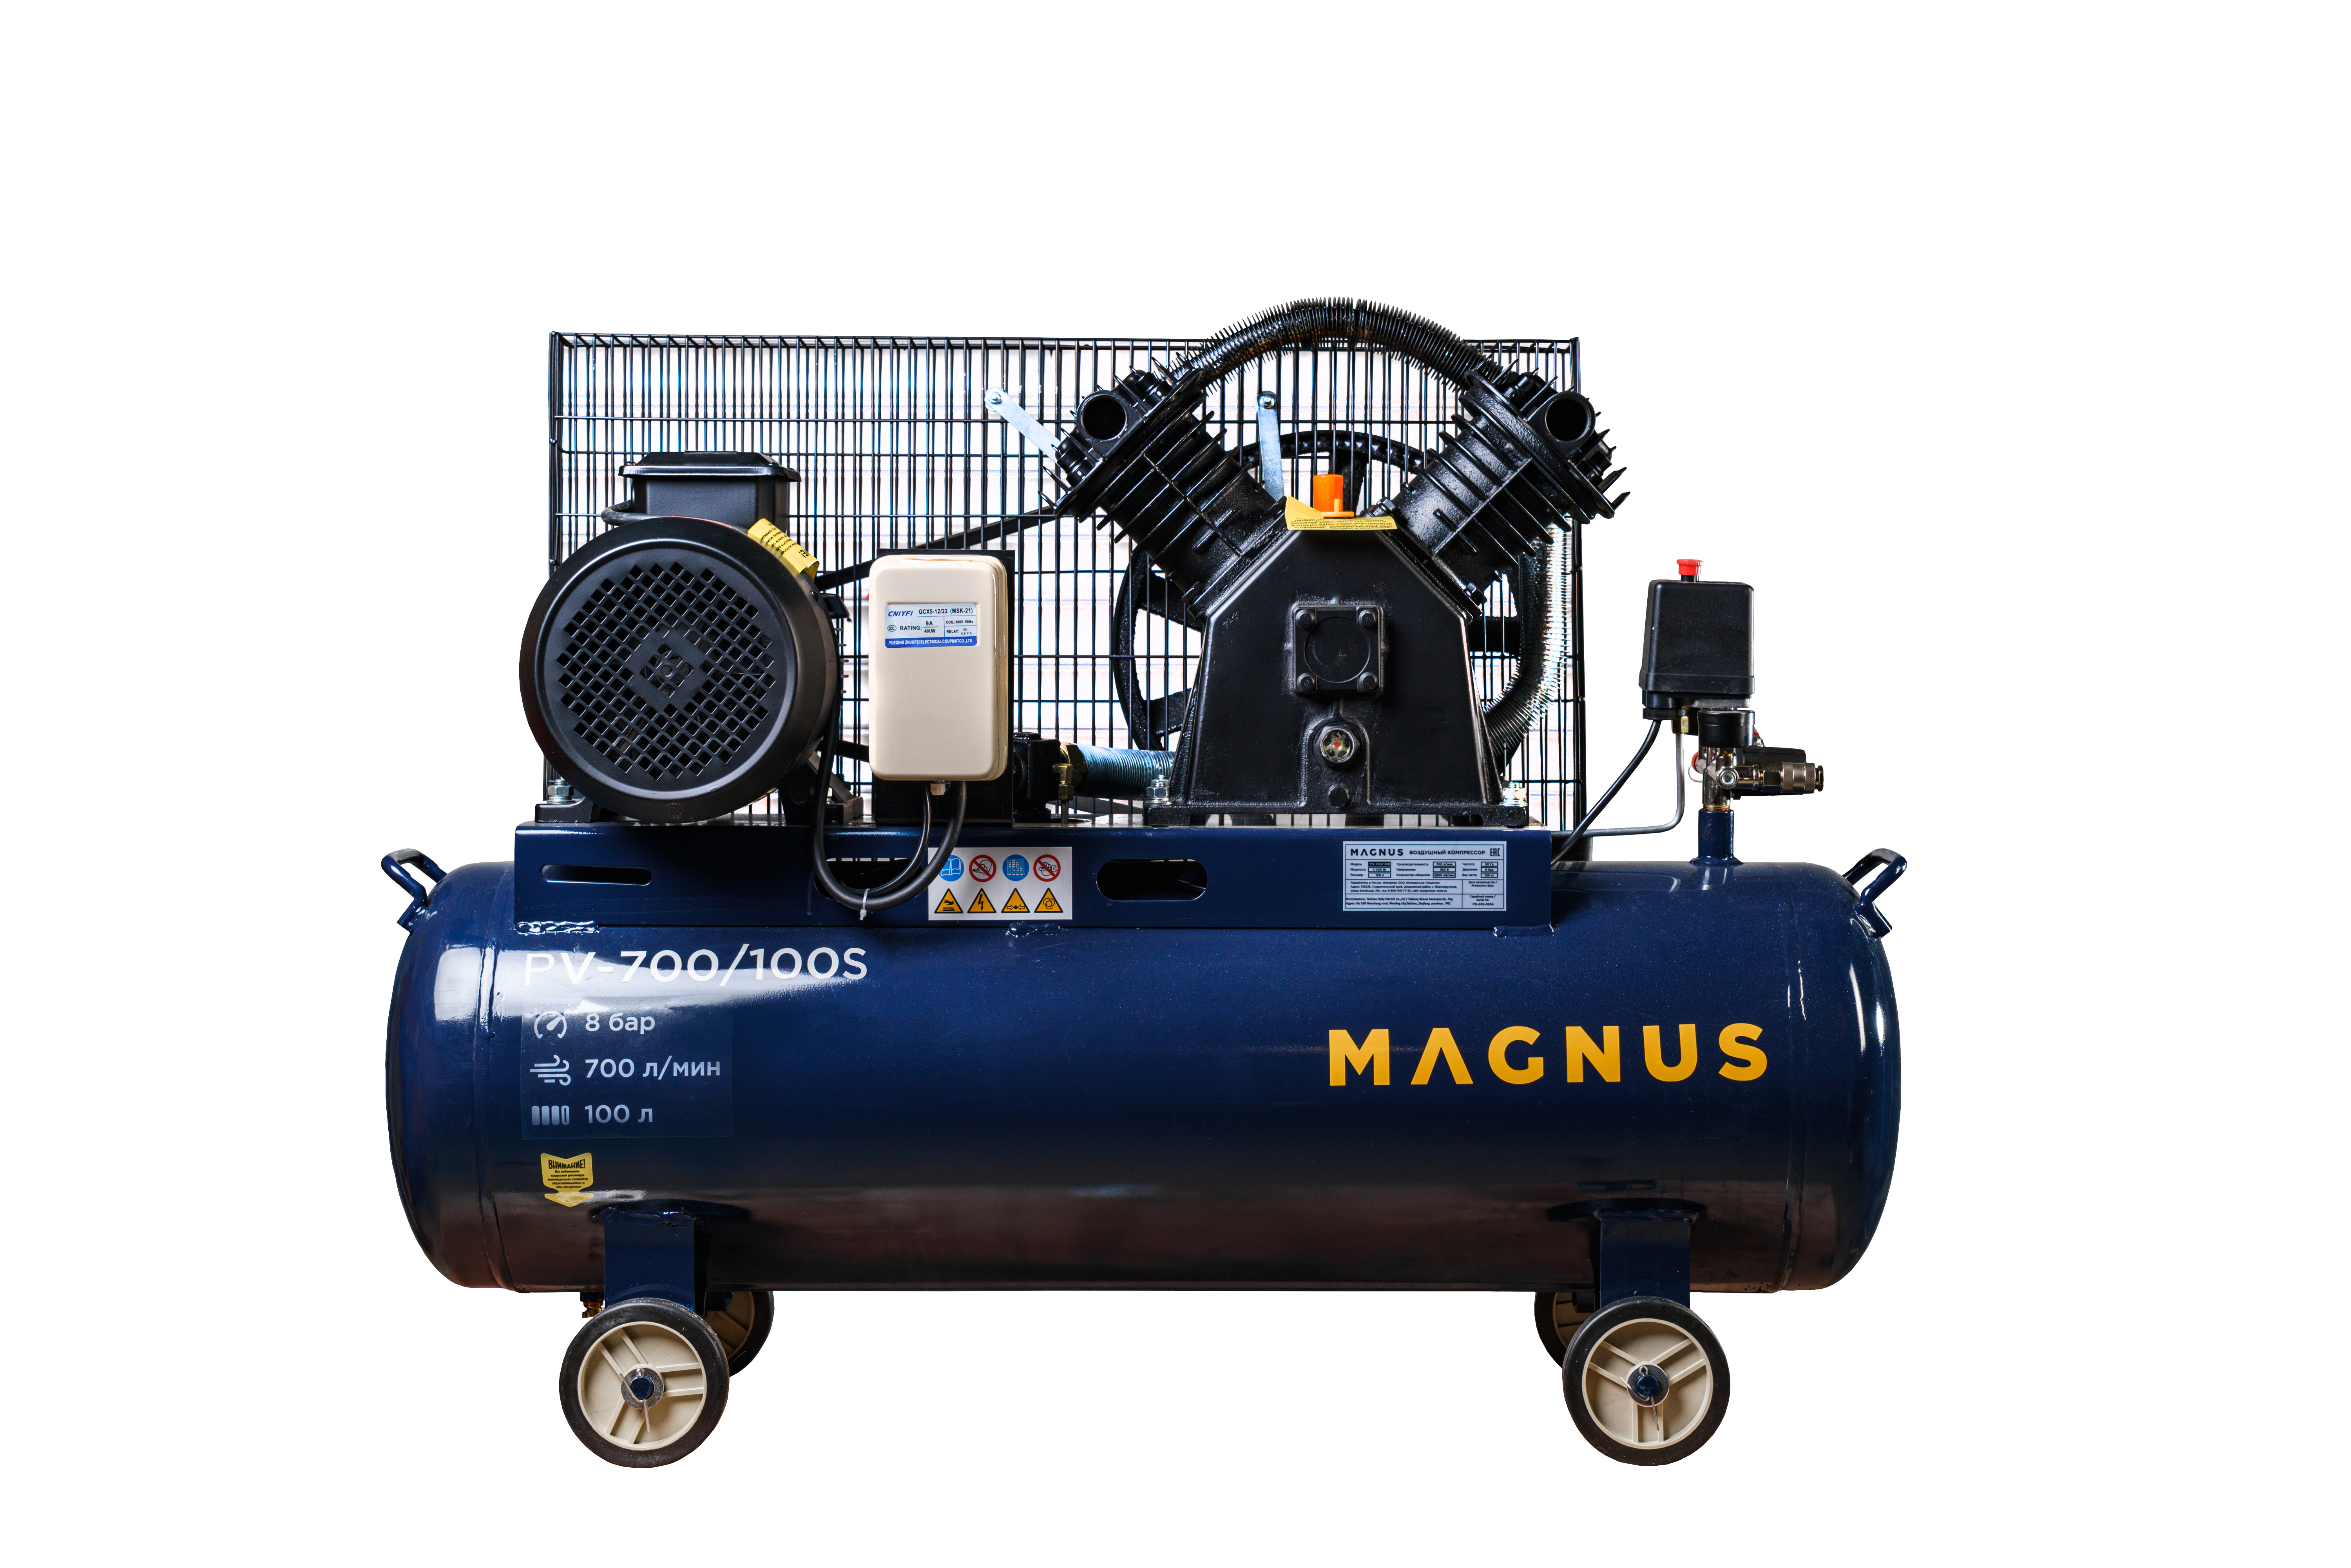 Компрессор воздушный Magnus KV-700/100S новый фильтр (10атм.,4,0кВт.,380В,Ф90) в Уфе